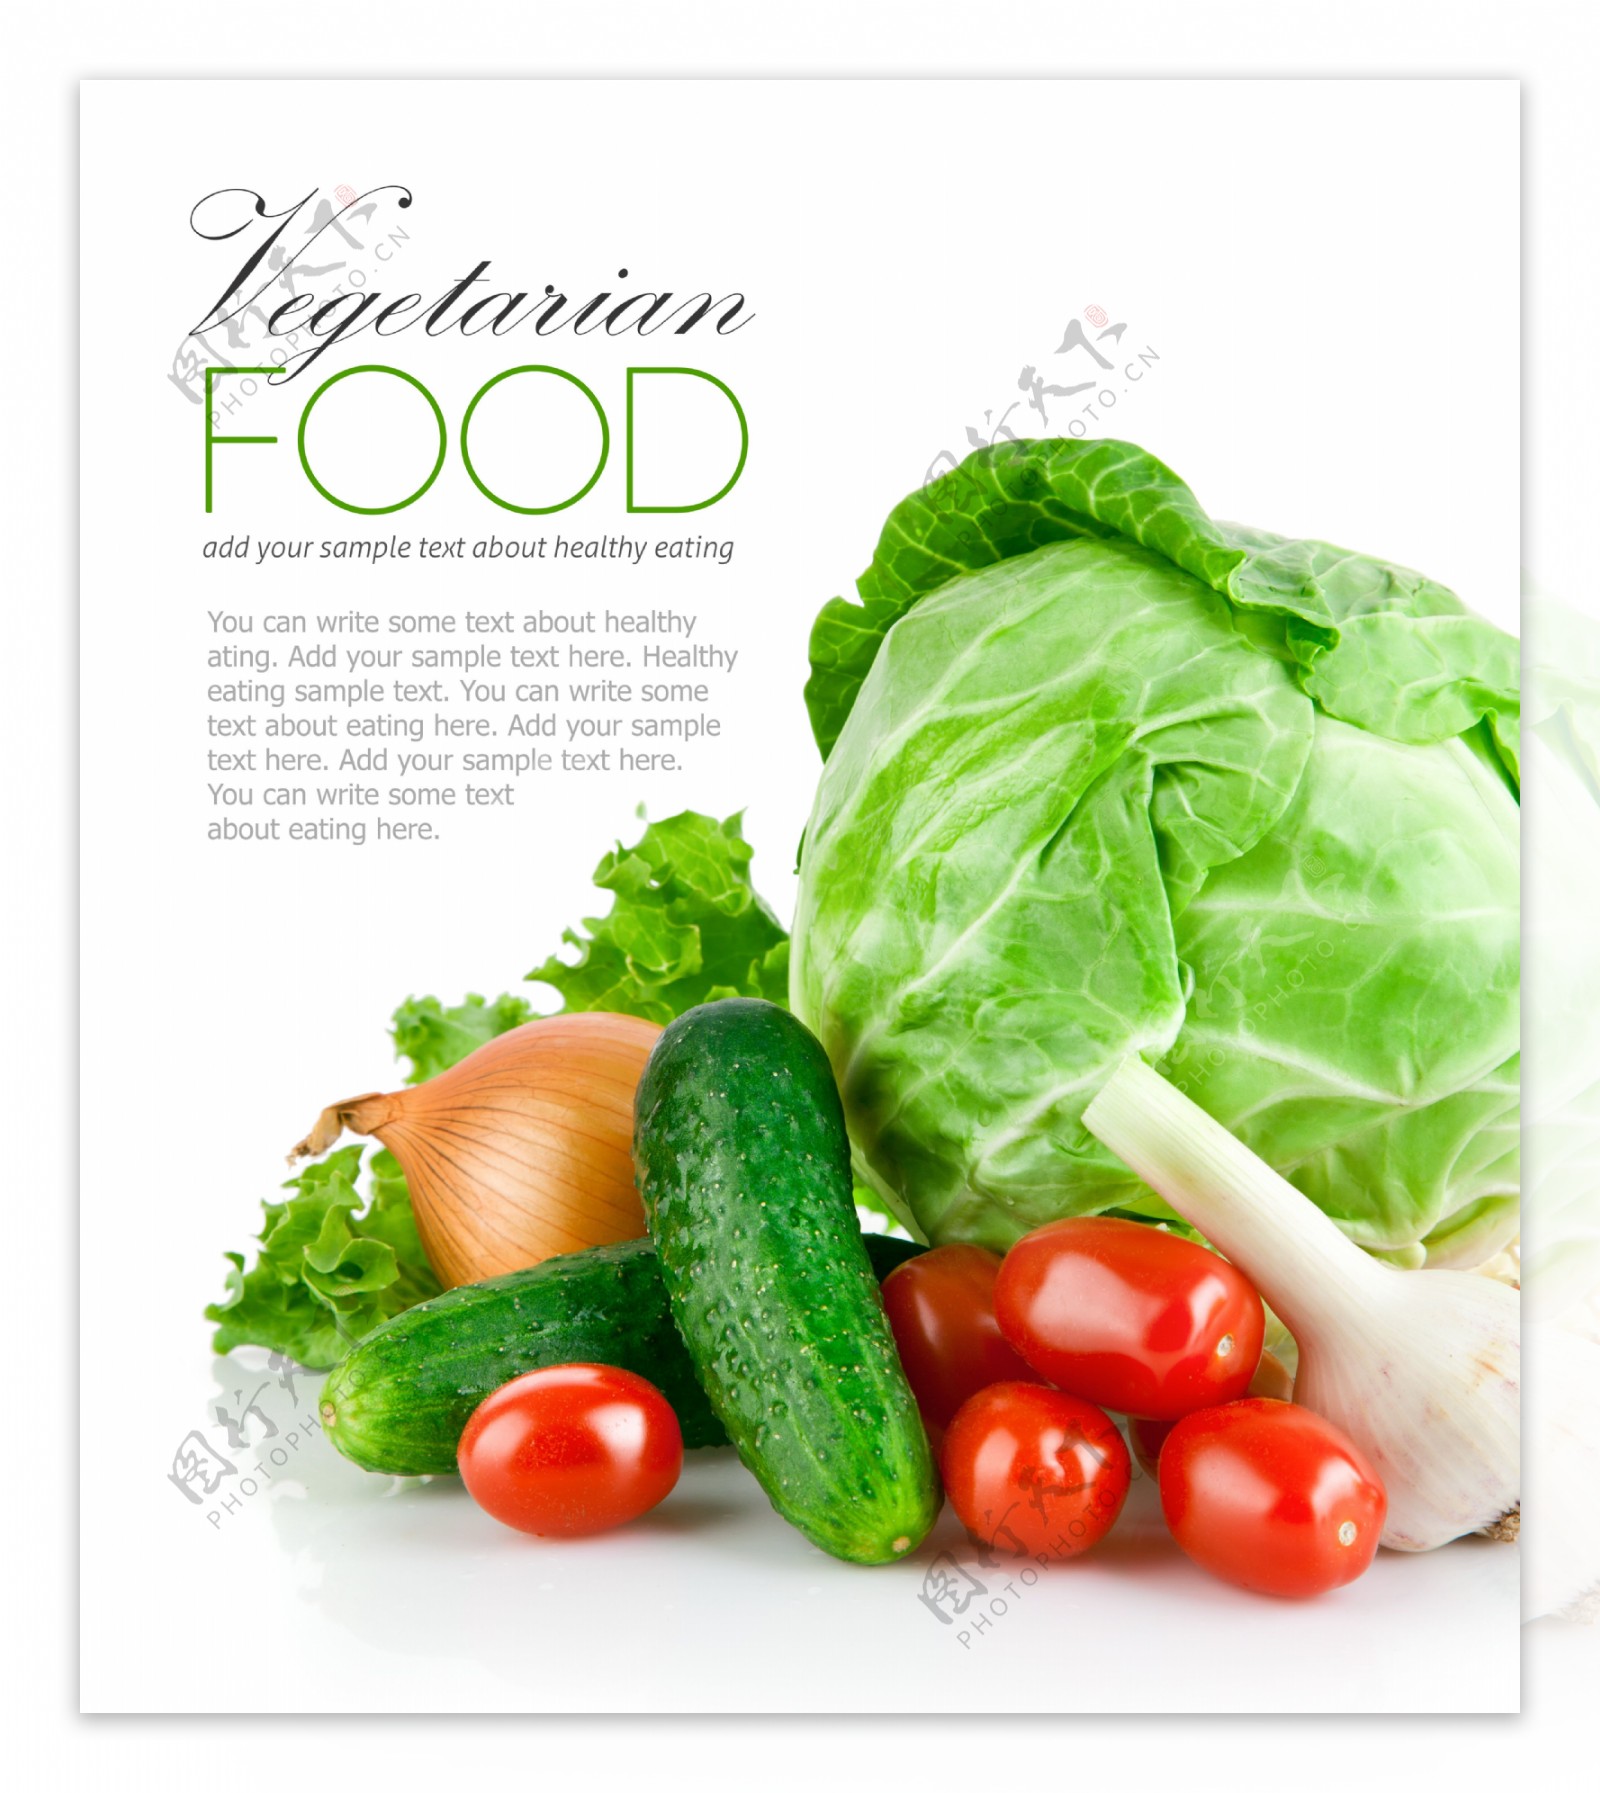 蔬菜广告背景图片